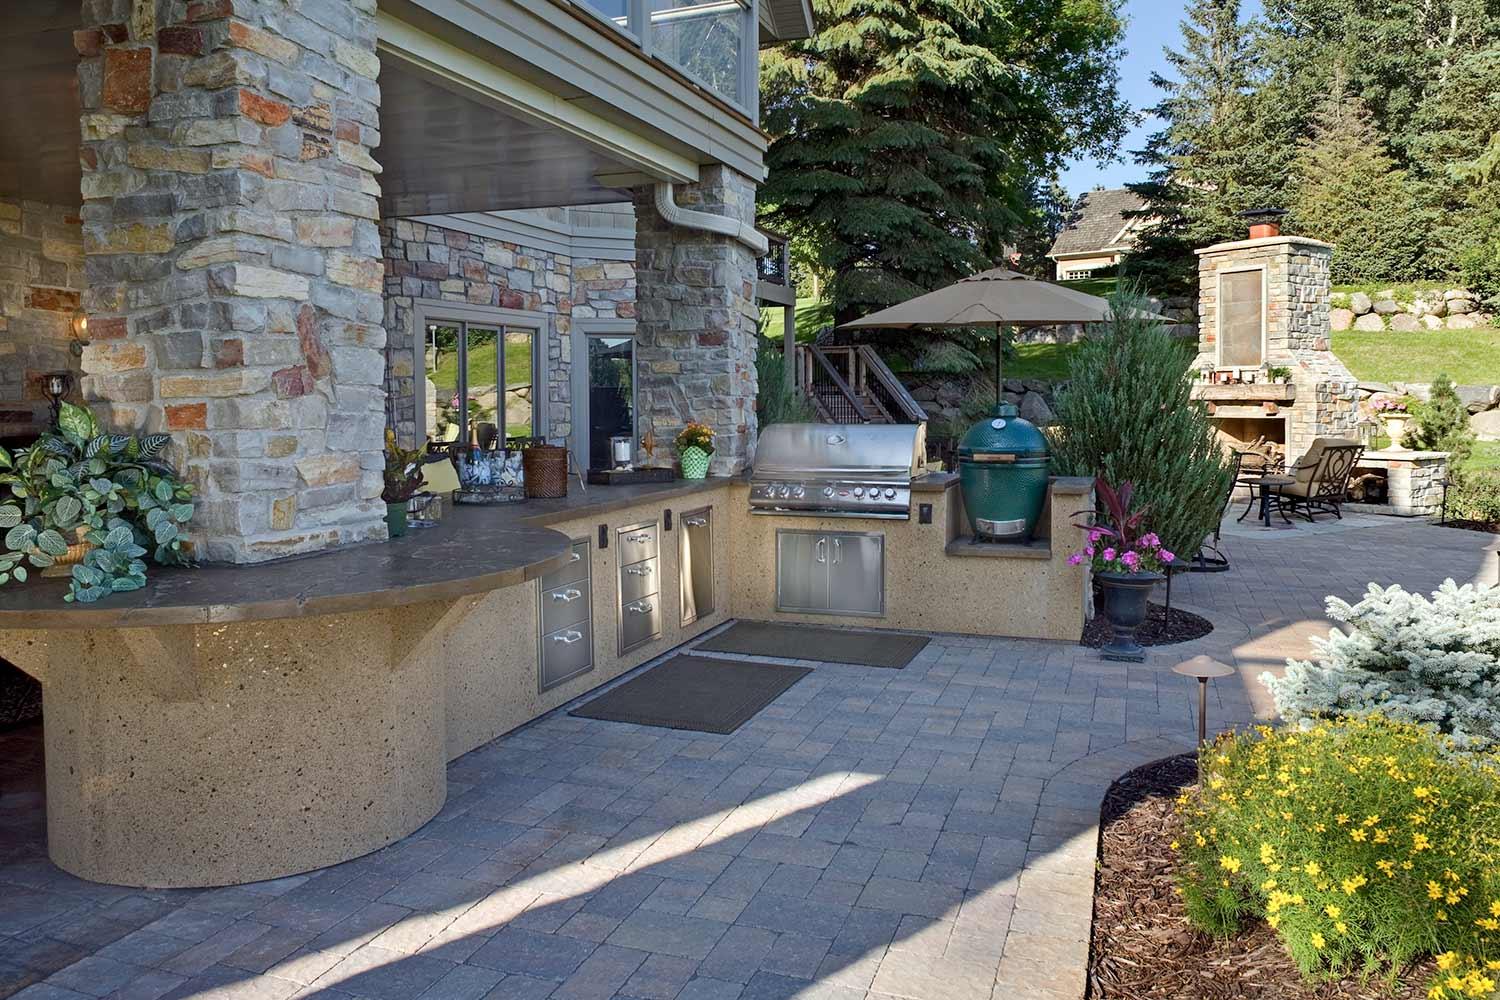 Luxury outdoor kitchen in Mound, MN backyard.